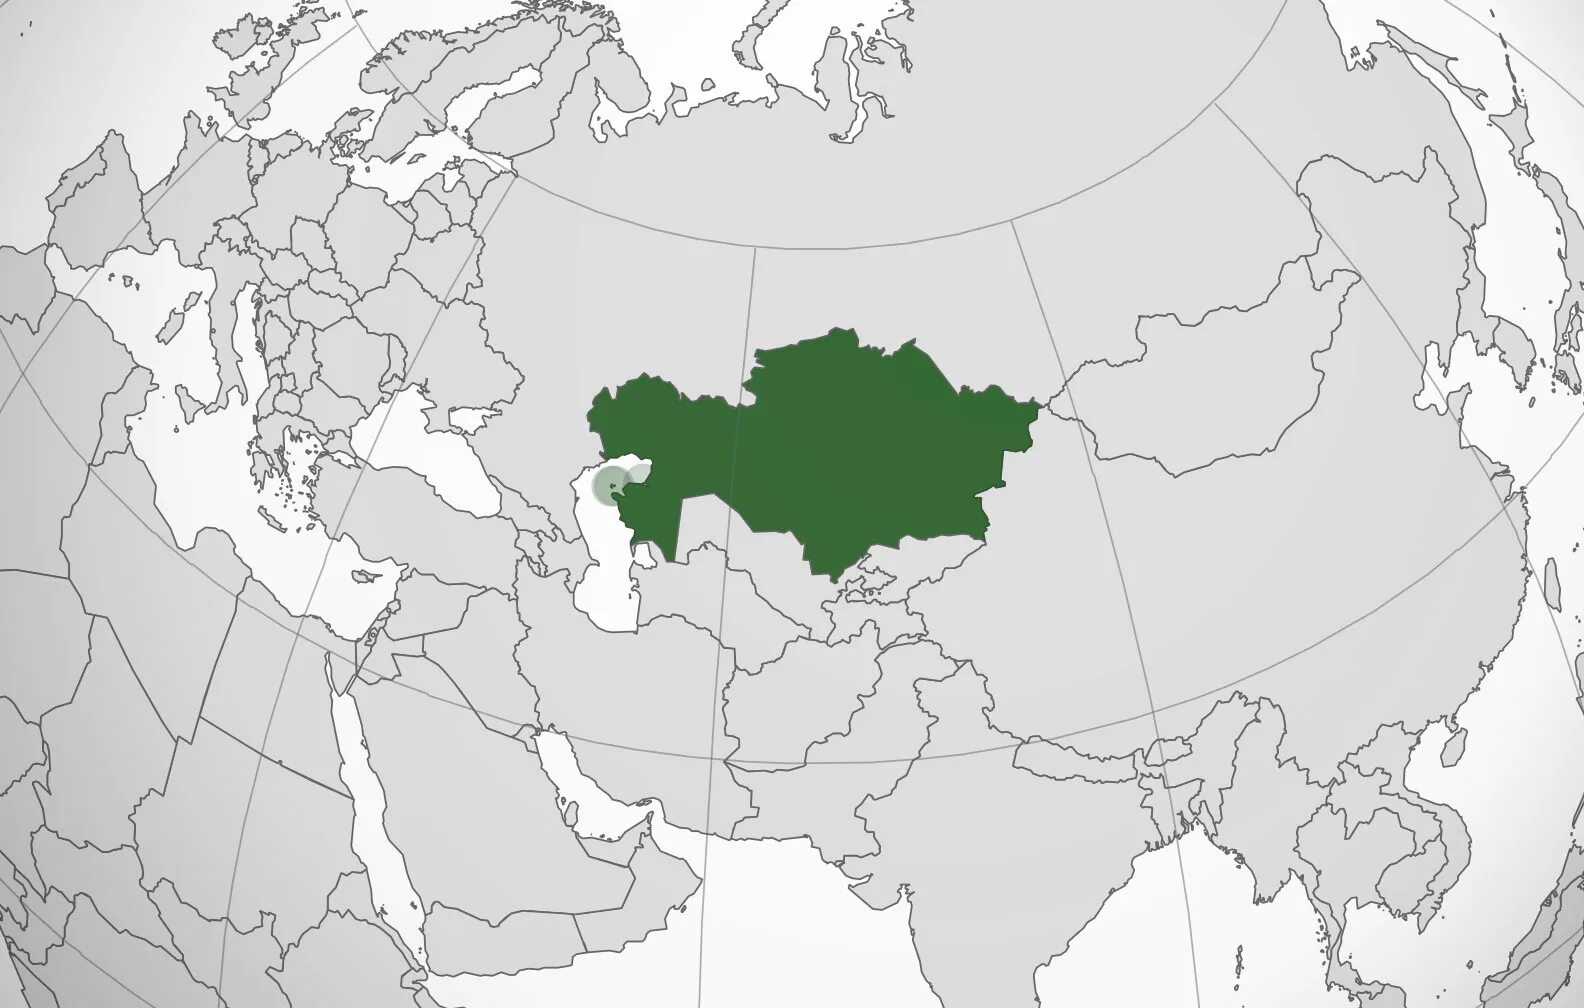 Азия Центральная Азия Казахстан. Центральная Азия на карте Евразии. Границы центральной Азии. Республики азии россии